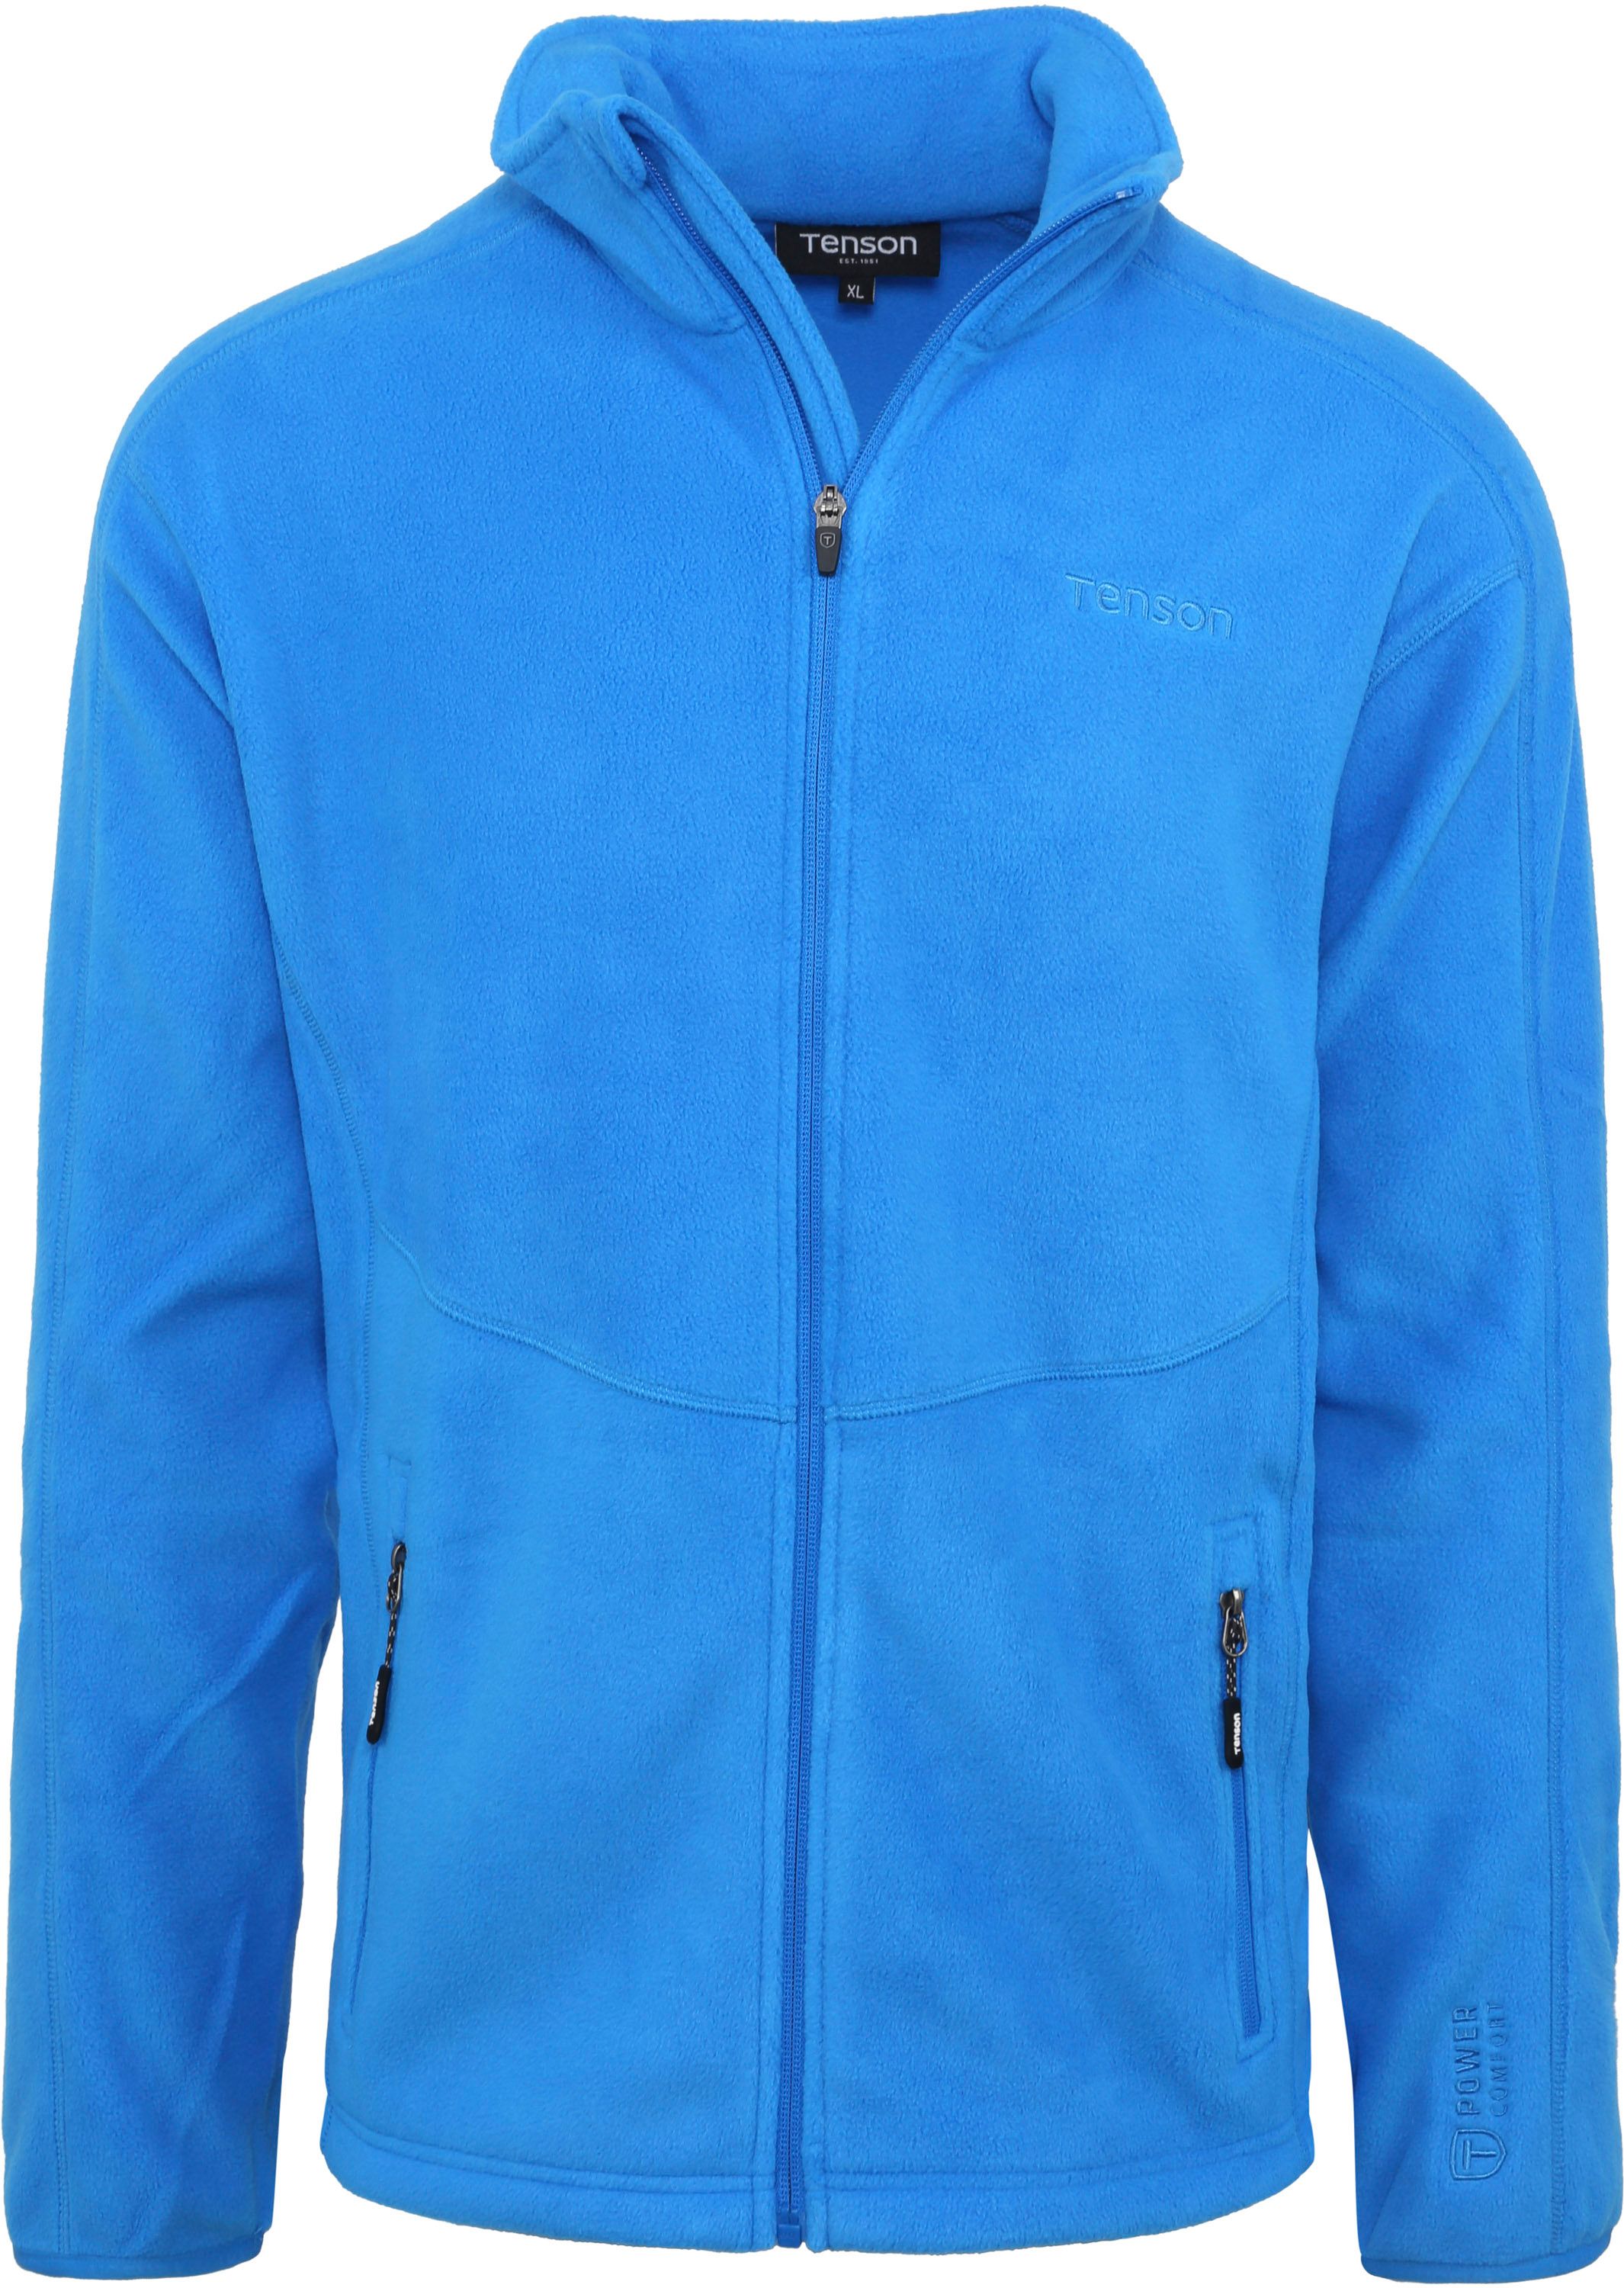 Tenson Miracle Fleece Jacket Blue size XXL